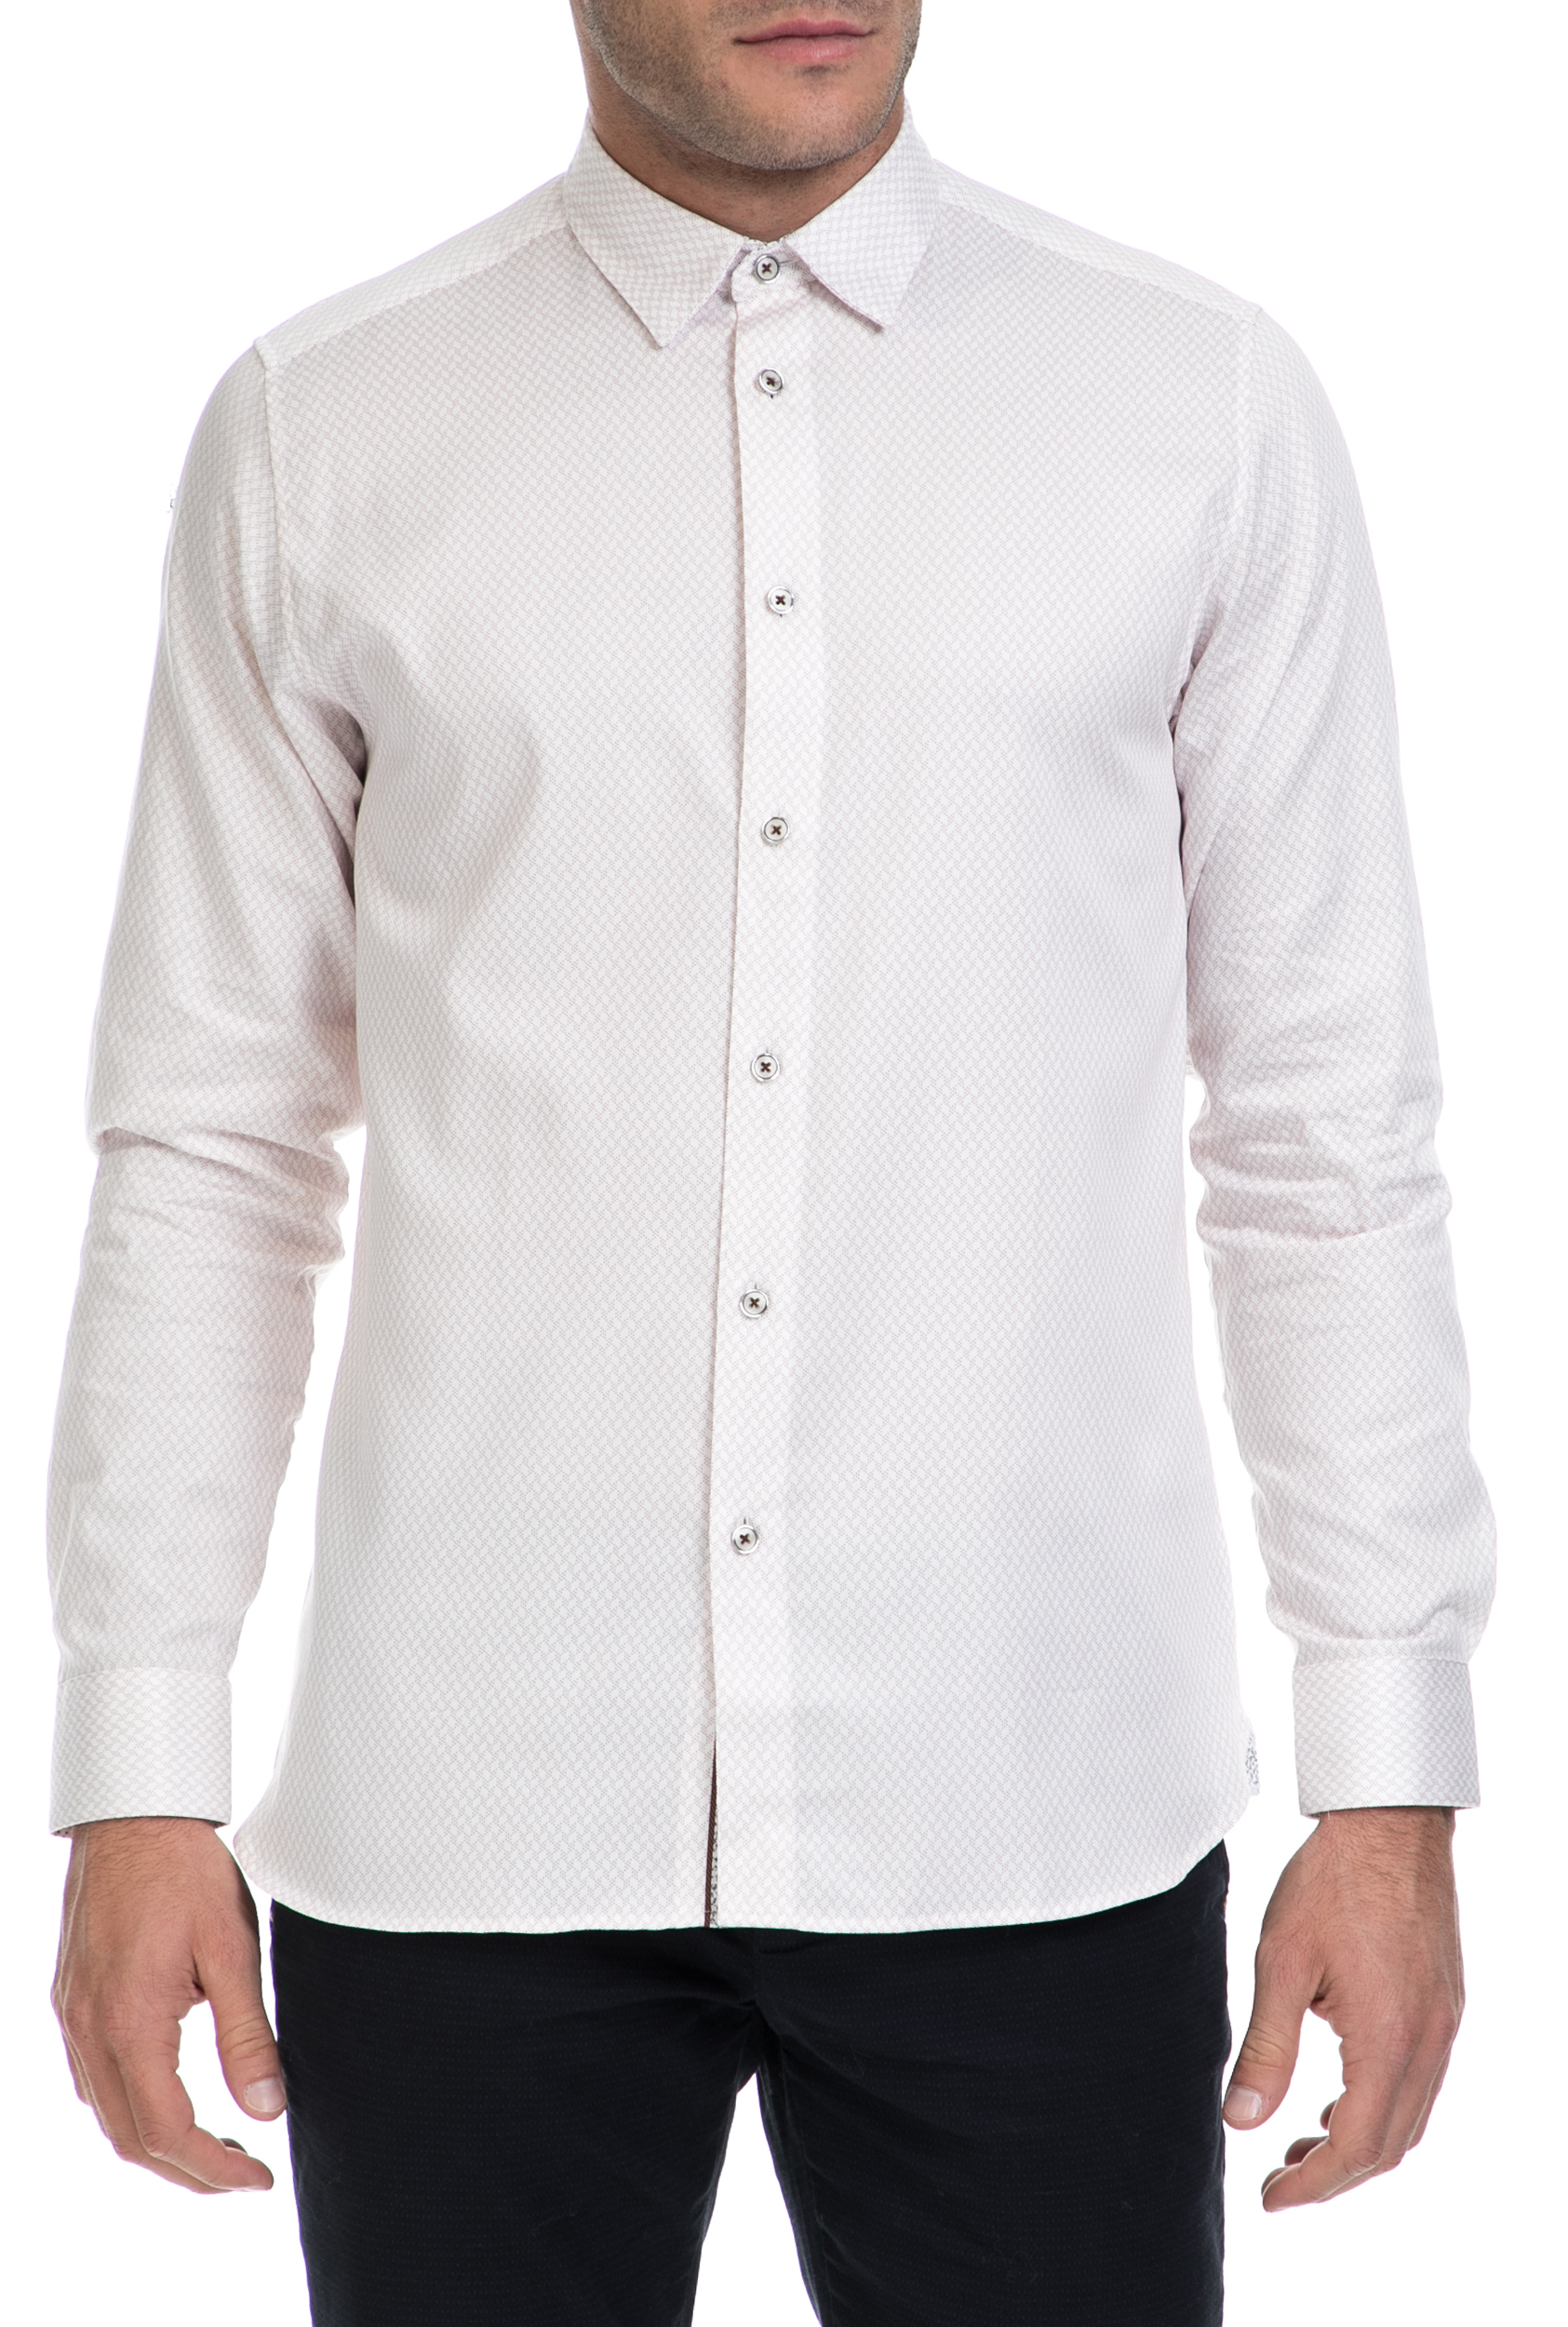 Ανδρικά/Ρούχα/Πουκάμισα/Μακρυμάνικα TED BAKER - Ανδρικό πουκάμισο SENNE TED BAKER λευκό